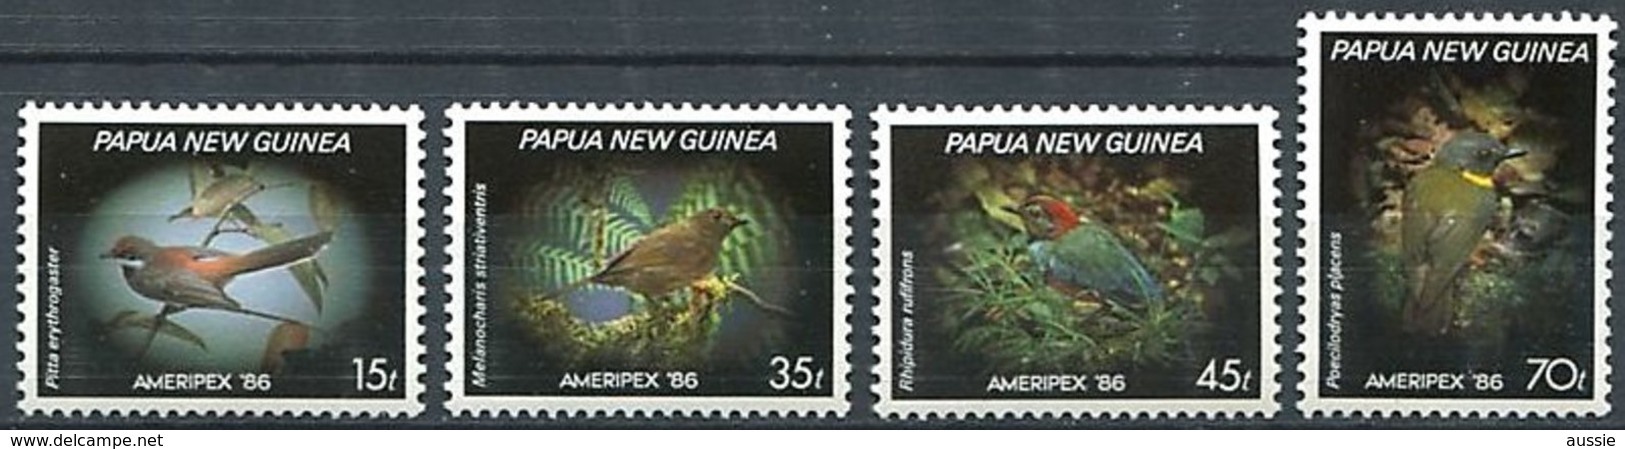 Papouasie Papua New Guinea 1986 Yvert 523-523 *** MNH Cote 10 Euro Faune Oiseaux Vogels Birds - Papouasie-Nouvelle-Guinée